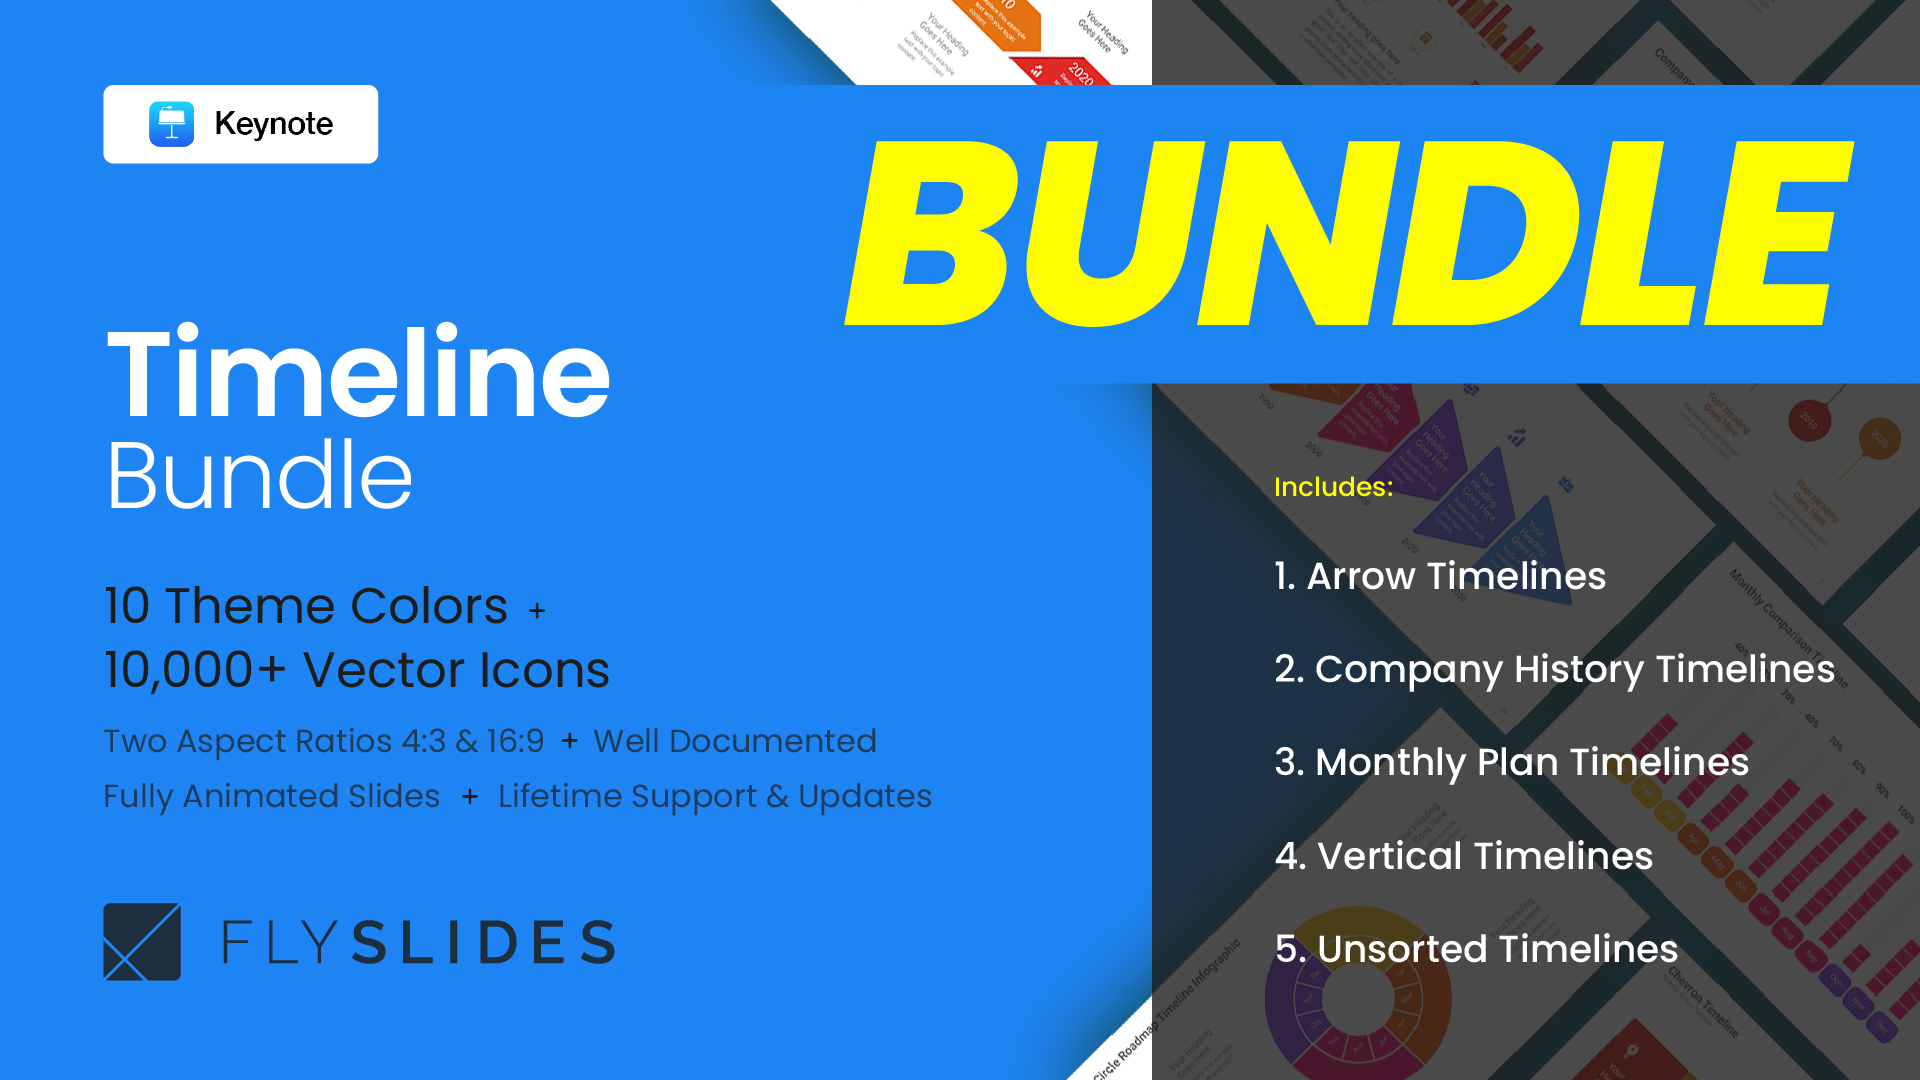 Buy Download Best Timeline Bundle Keynote Template Slides for Presentations